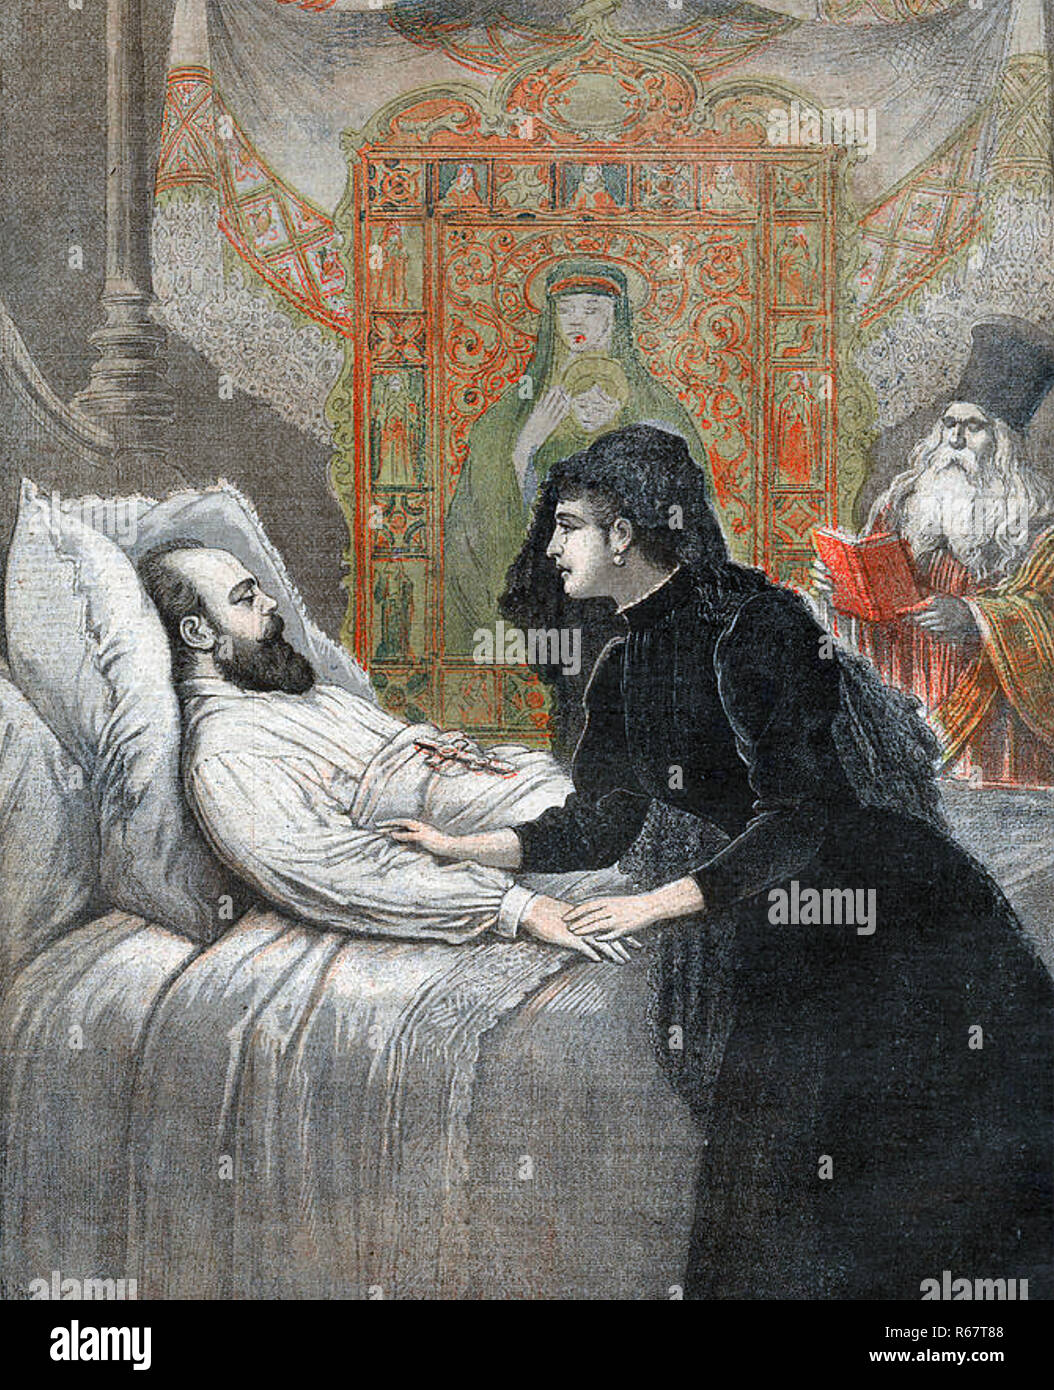 Alexandre III DE RUSSIE (1845-1894) sur son lit de mort avec son épouse Dagmar de Danemark Banque D'Images